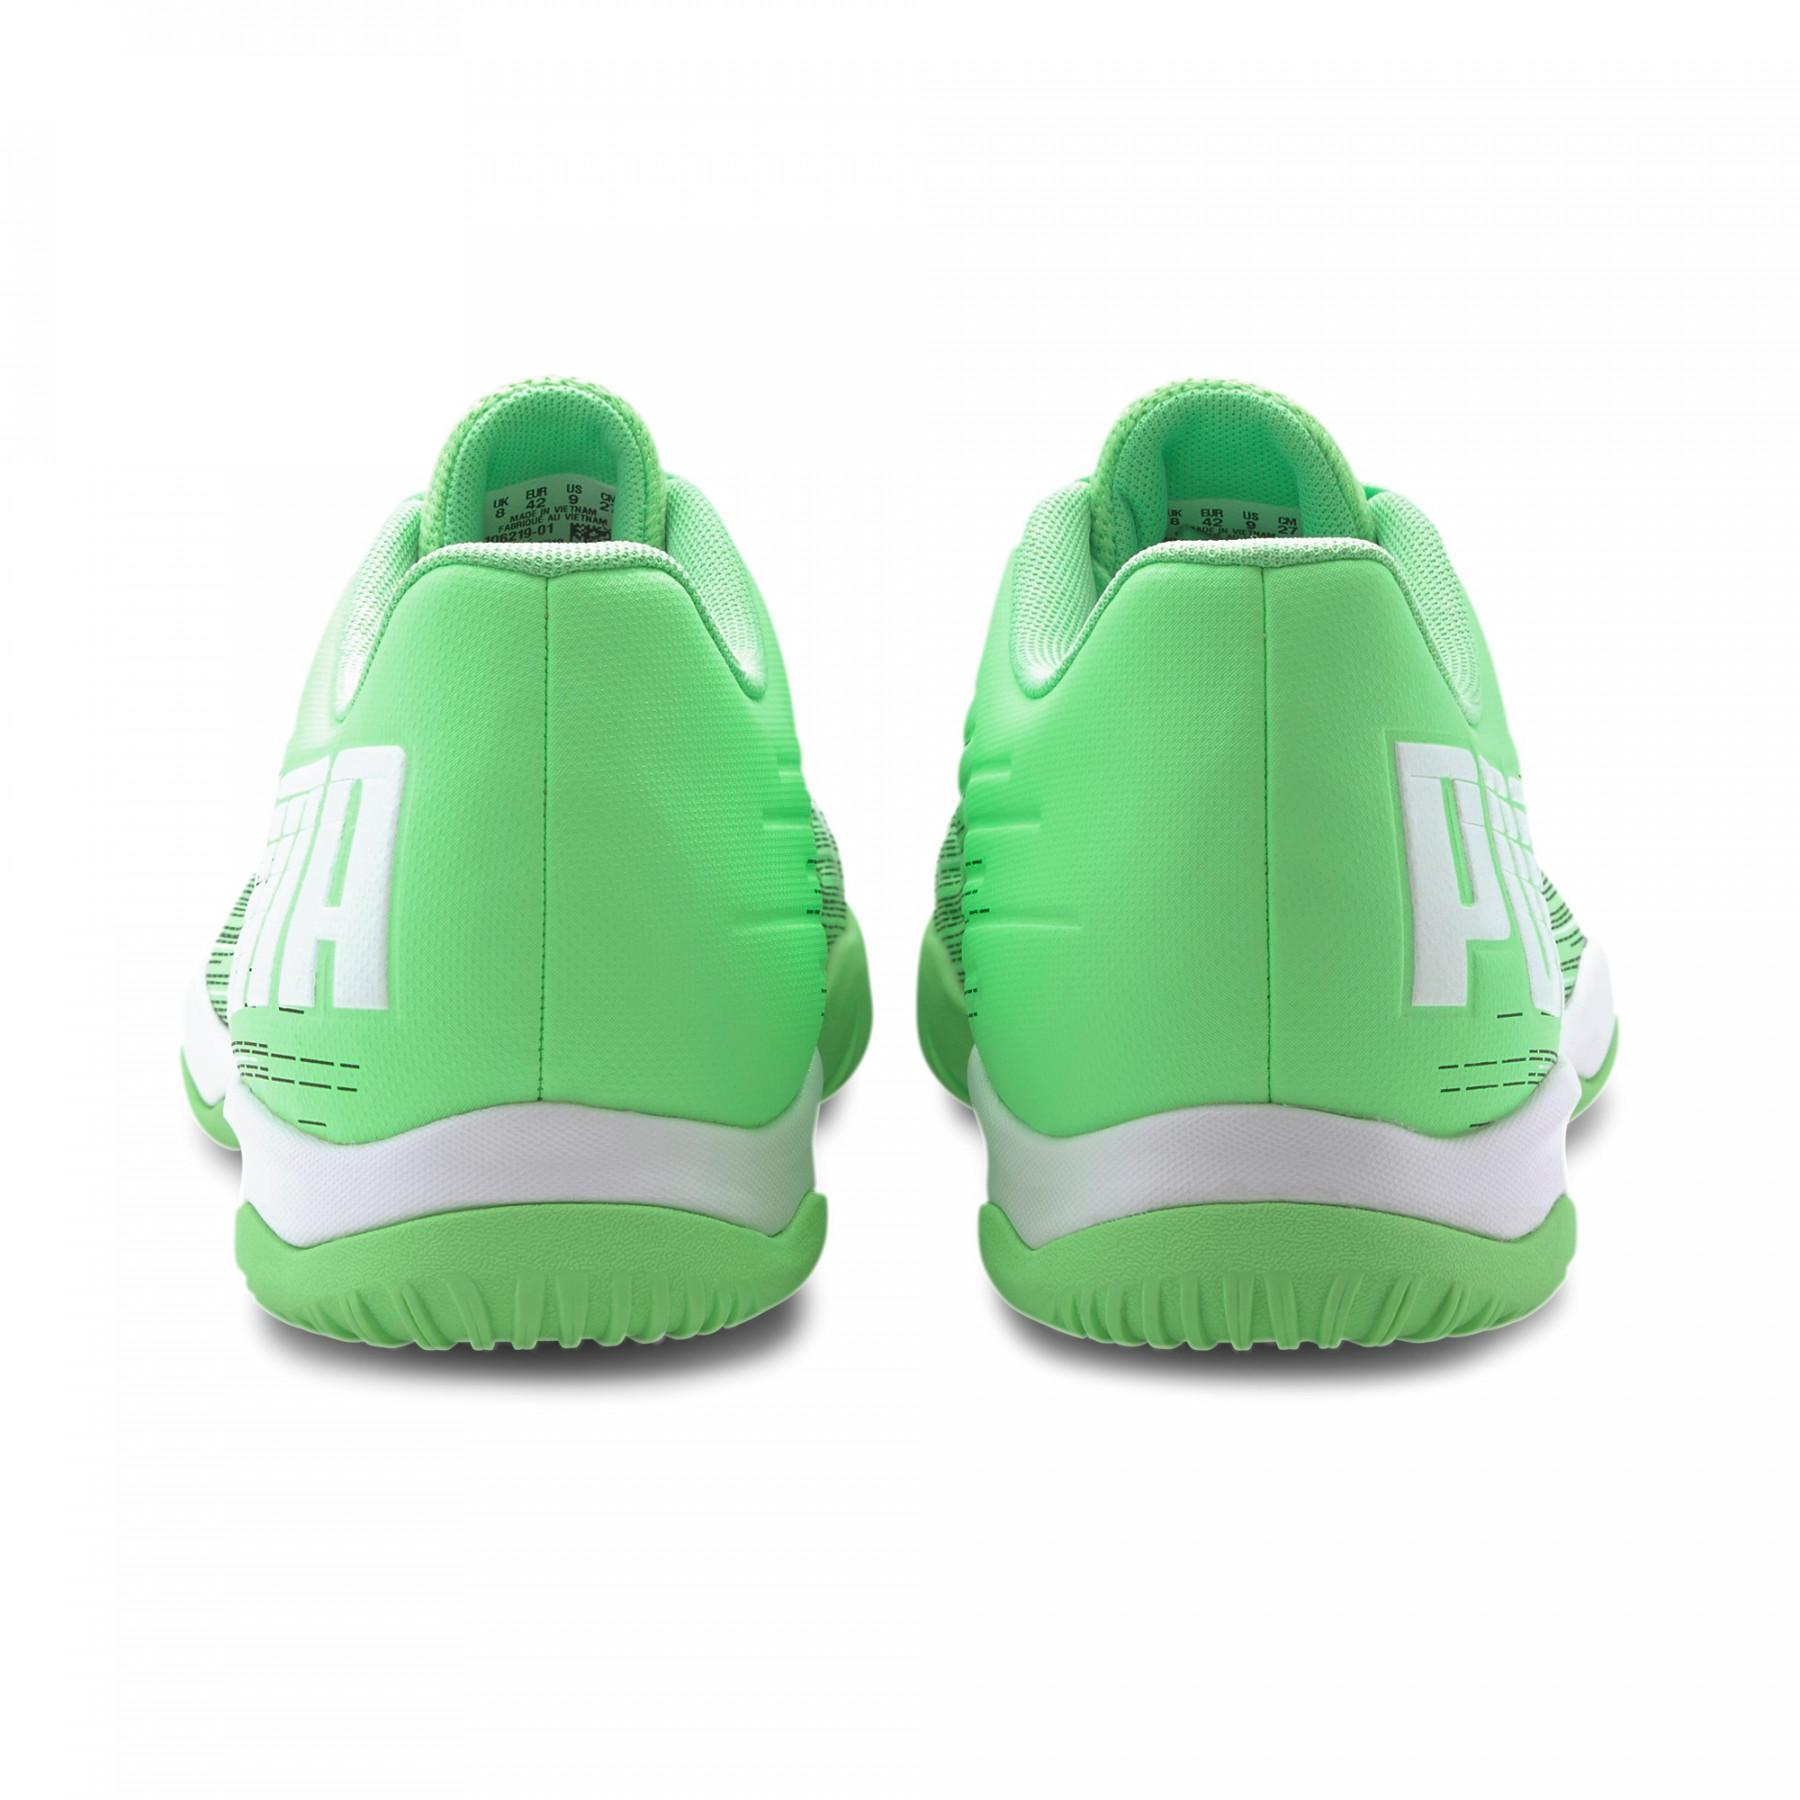 Schuhe Puma Adrenalite 4.1